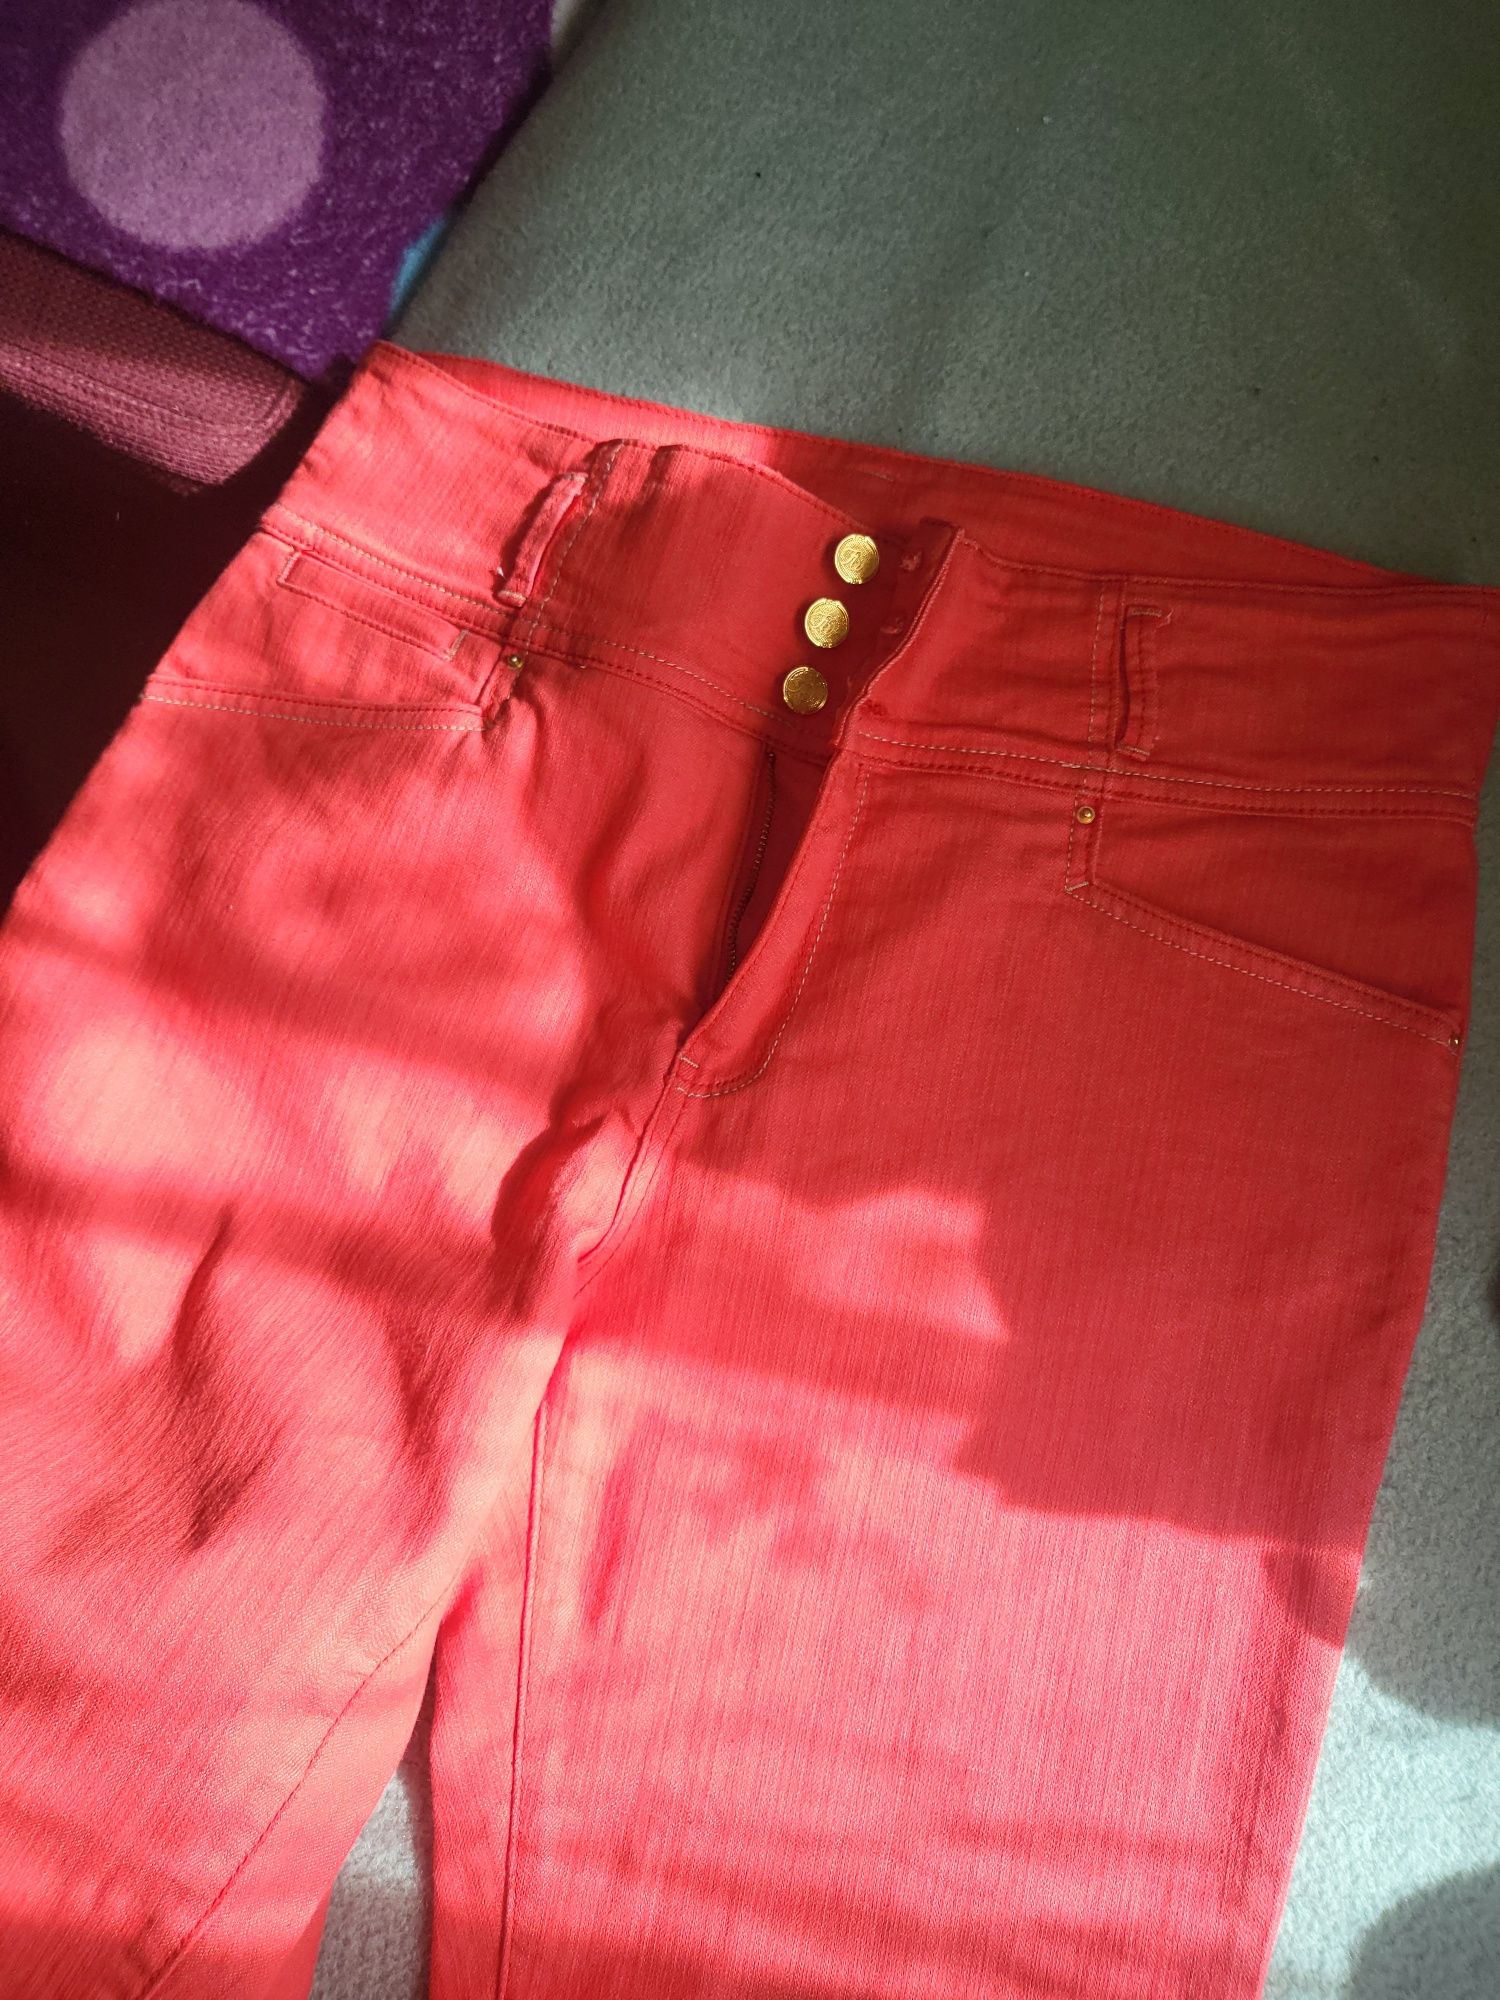 Pantaloni roșii  stare bună